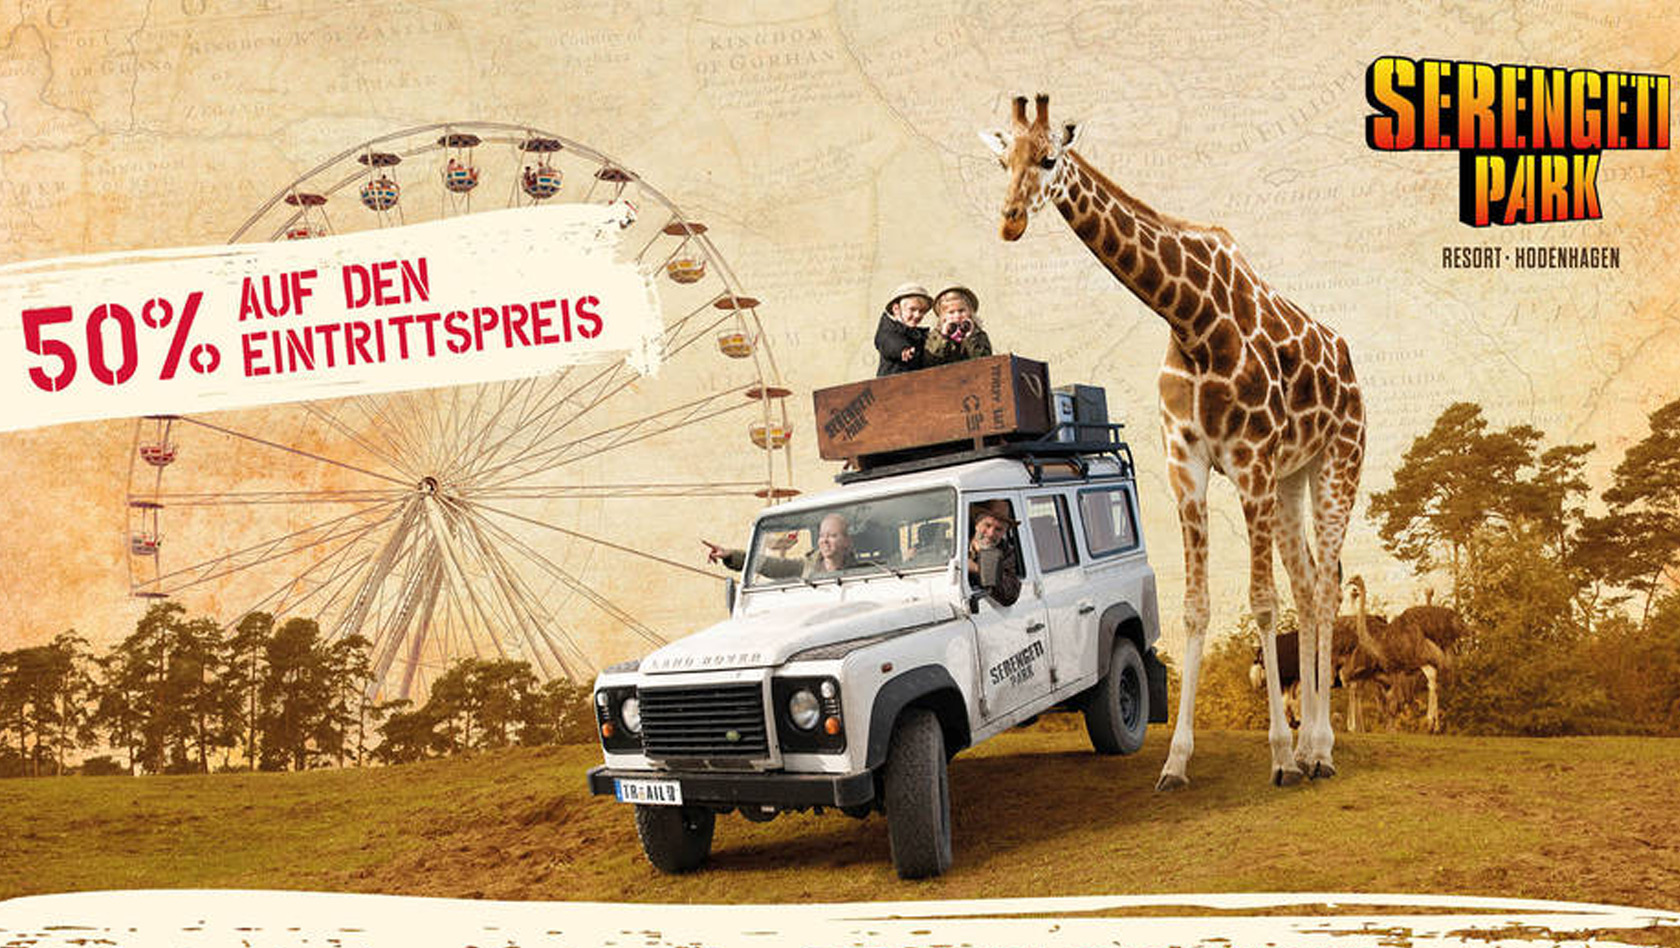 Serengeti Park Rossmann Aktion 2020 Termine Und Details